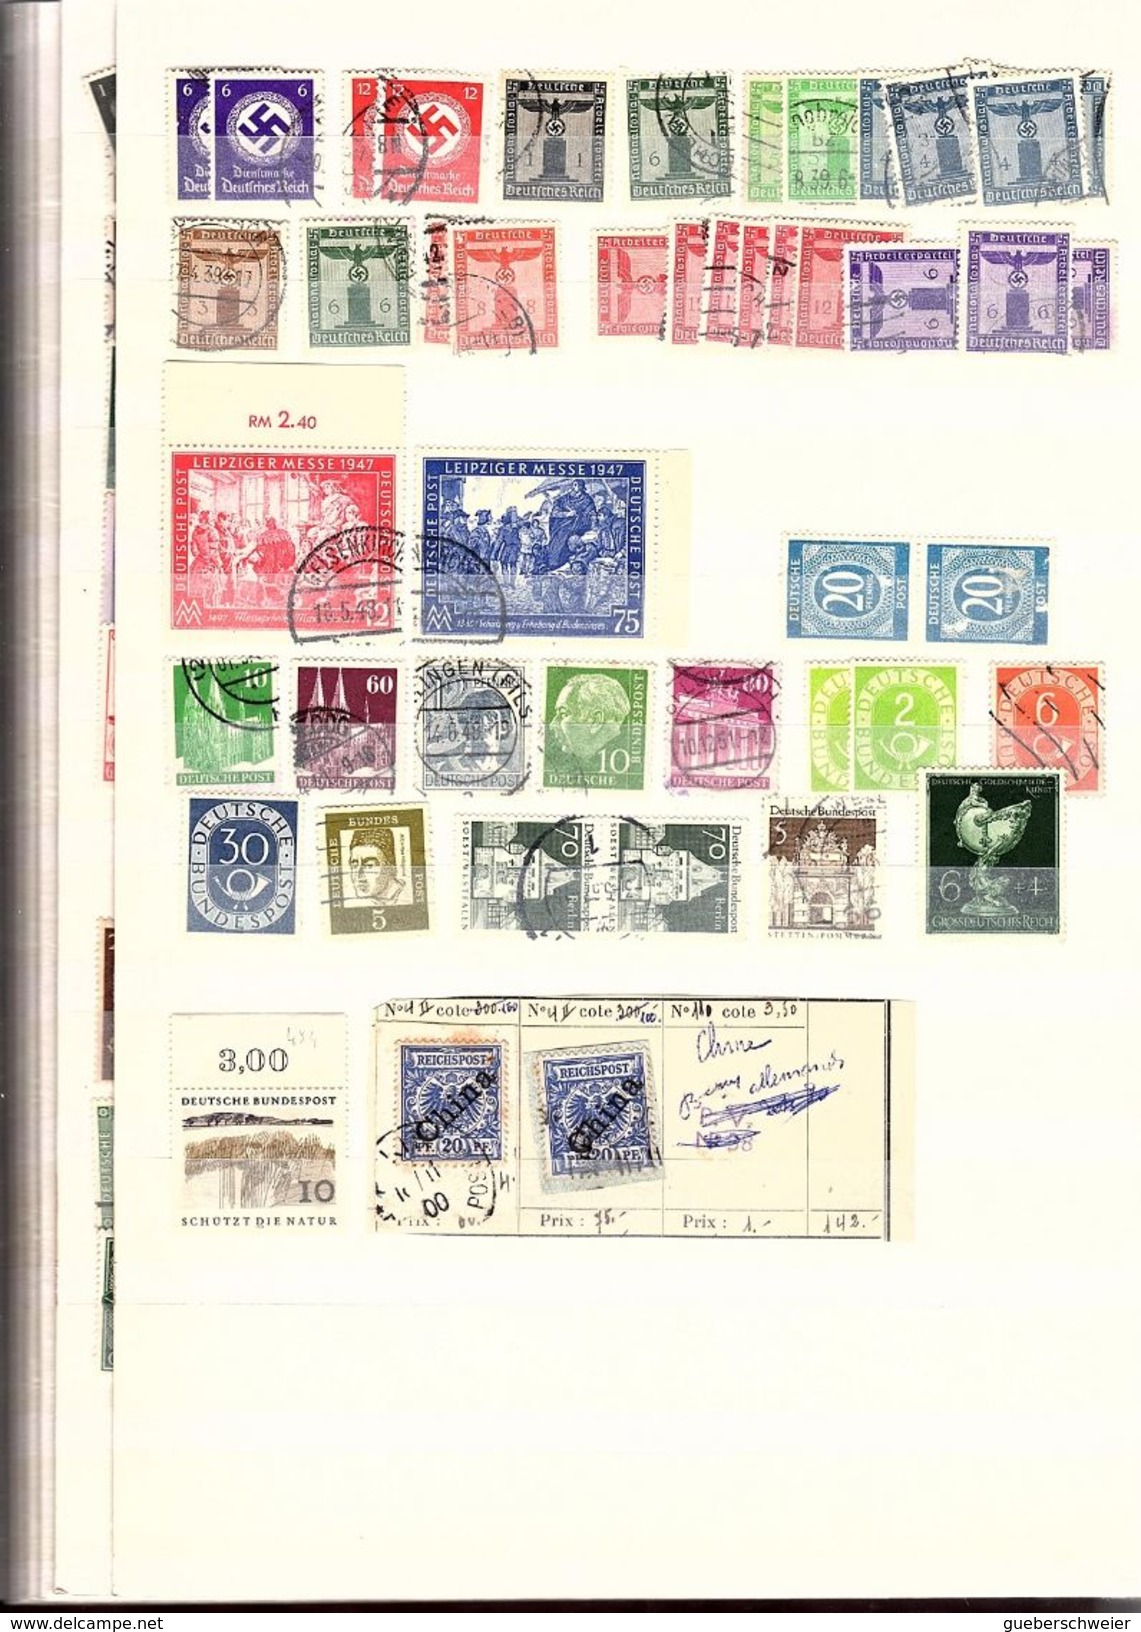 classeur de 64 pages avec des milliers de timbres dont anciennes Colonies françaises, anglaises voir scans avec variétés